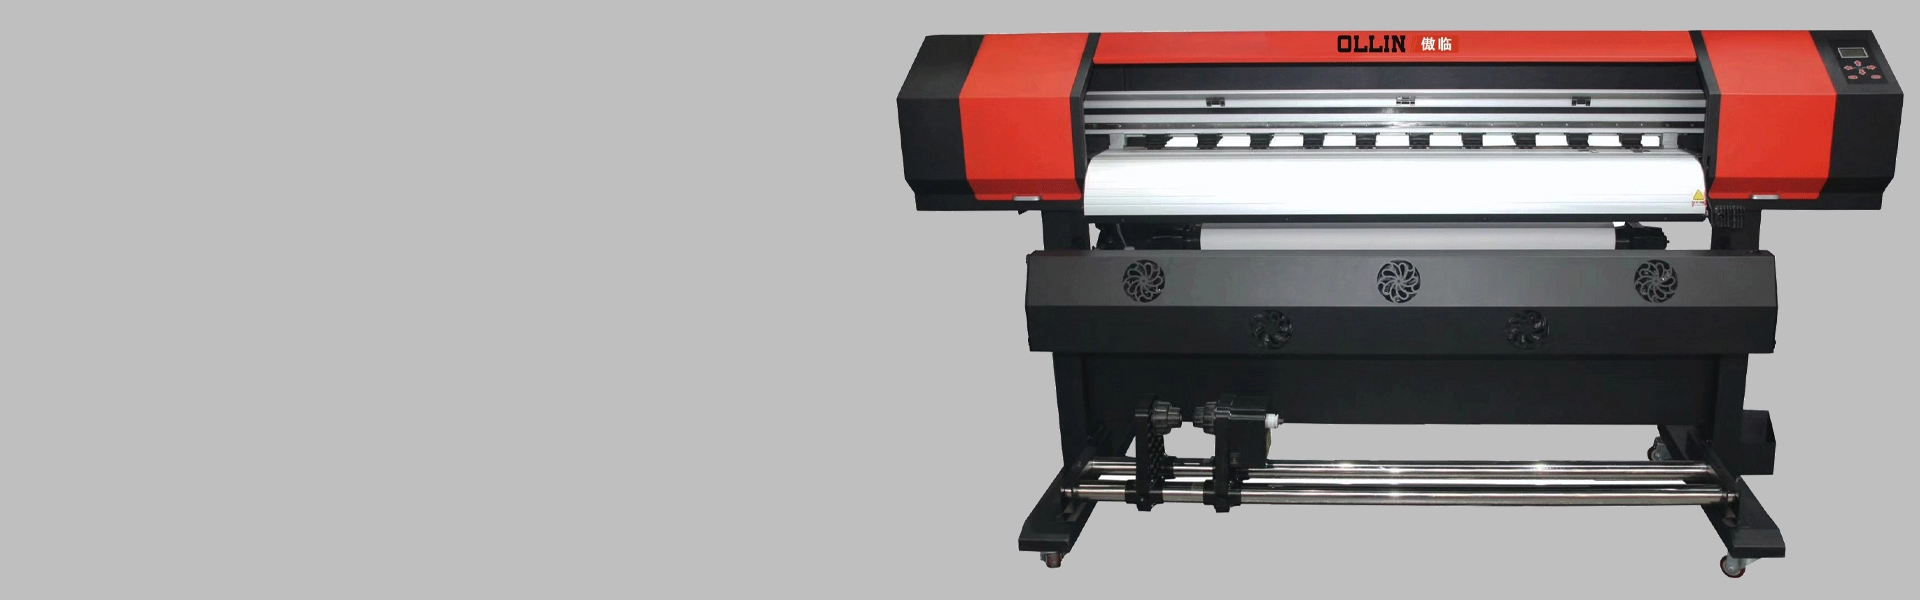 Принтер XP600 1,2 м